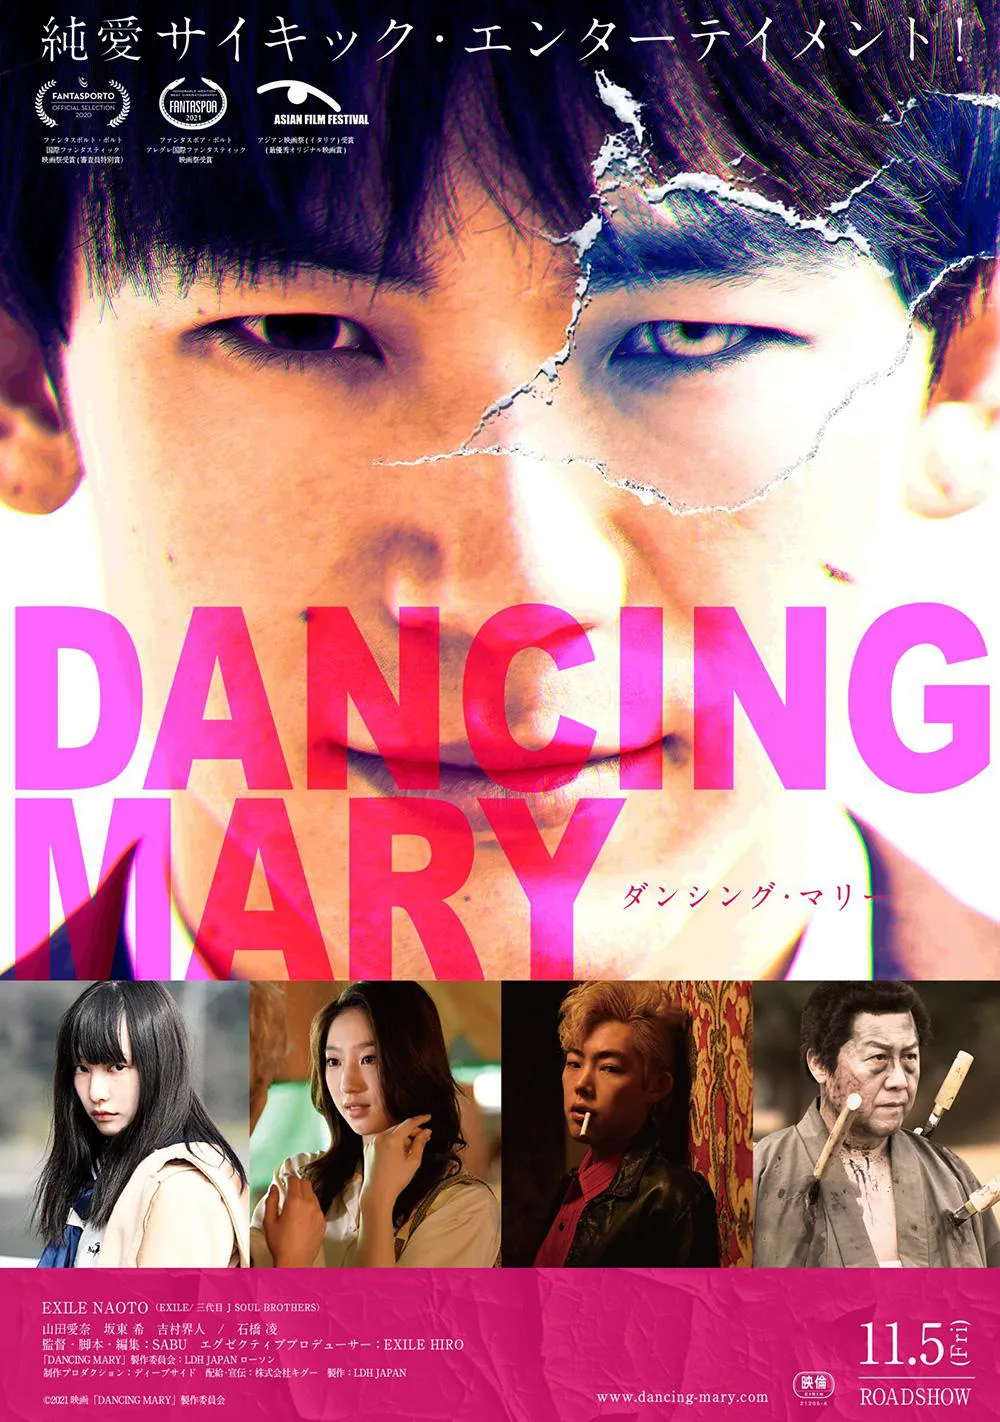 映画「DANCING MARY ダンシング・マリー」は11月5日(金)から全国順次公開